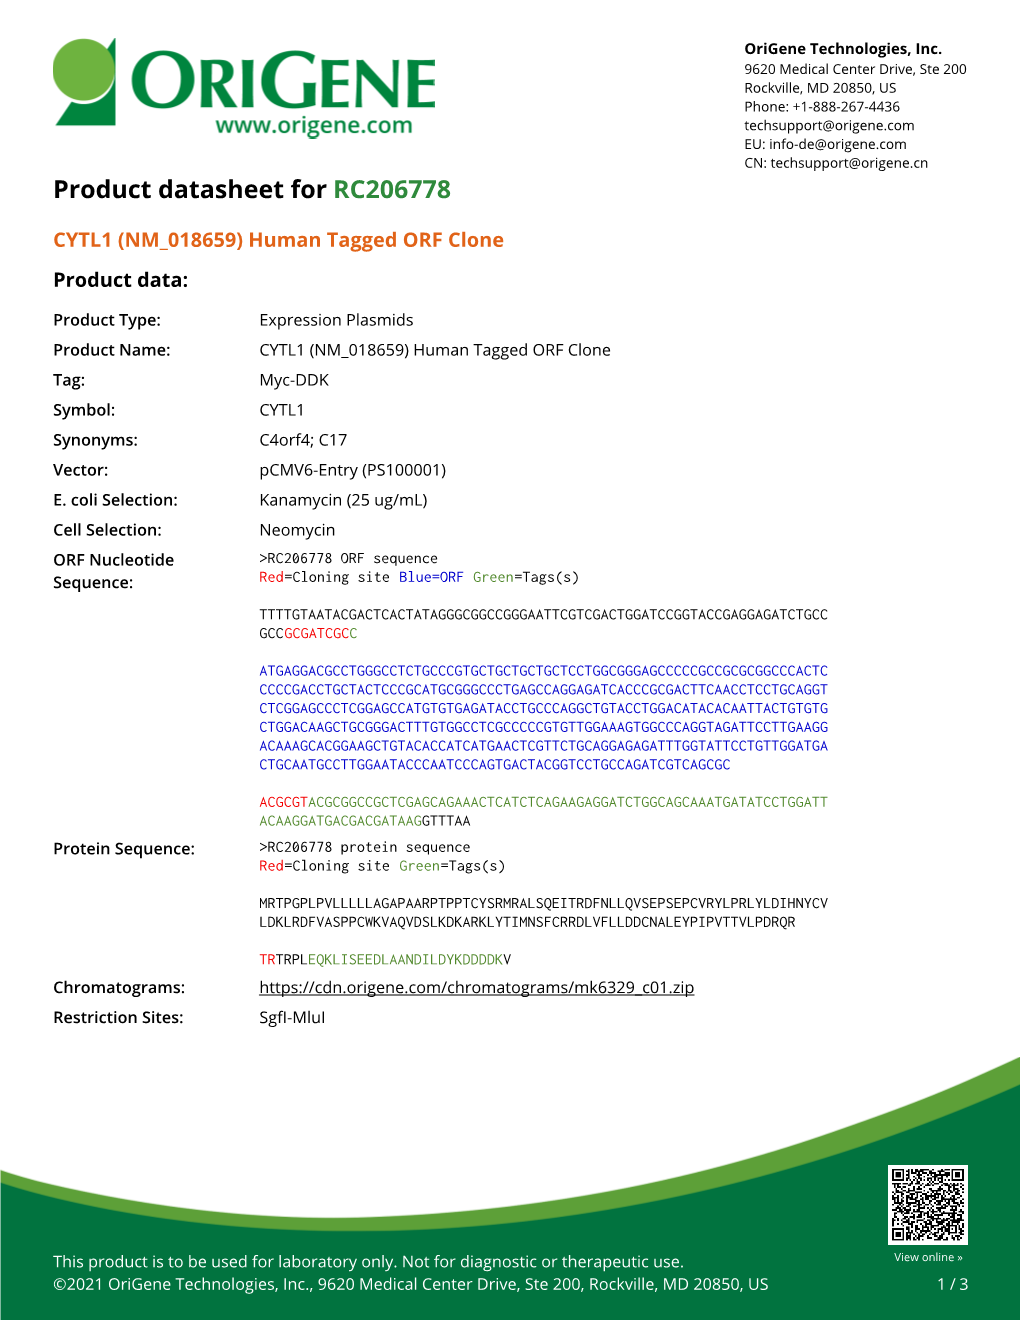 CYTL1 (NM 018659) Human Tagged ORF Clone – RC206778 | Origene